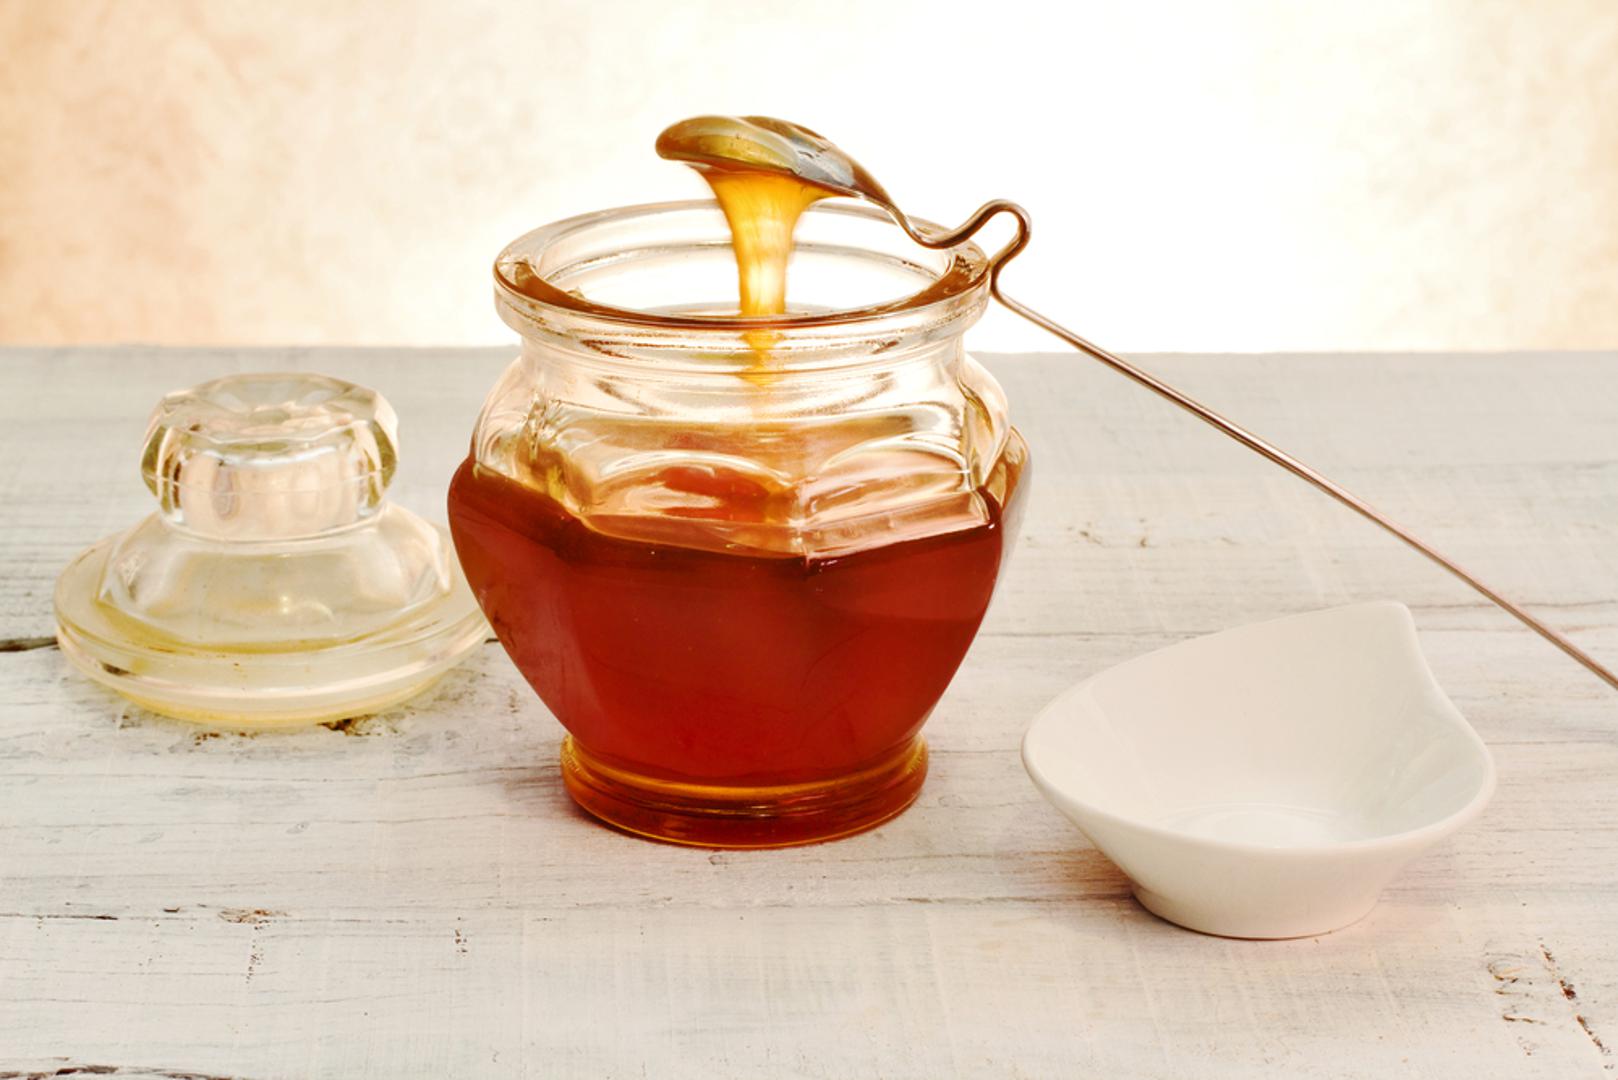 Med je oduvijek imao posebno mjesto u svakom domaćinstvu, no neki proizvođači medu dodaju šećerni sirup kako bi dobili veće količine. Ako želite znati razlikovati čisti, pravi med od "lažnog", ovo su trikovi koji će vam u tome pomoći...